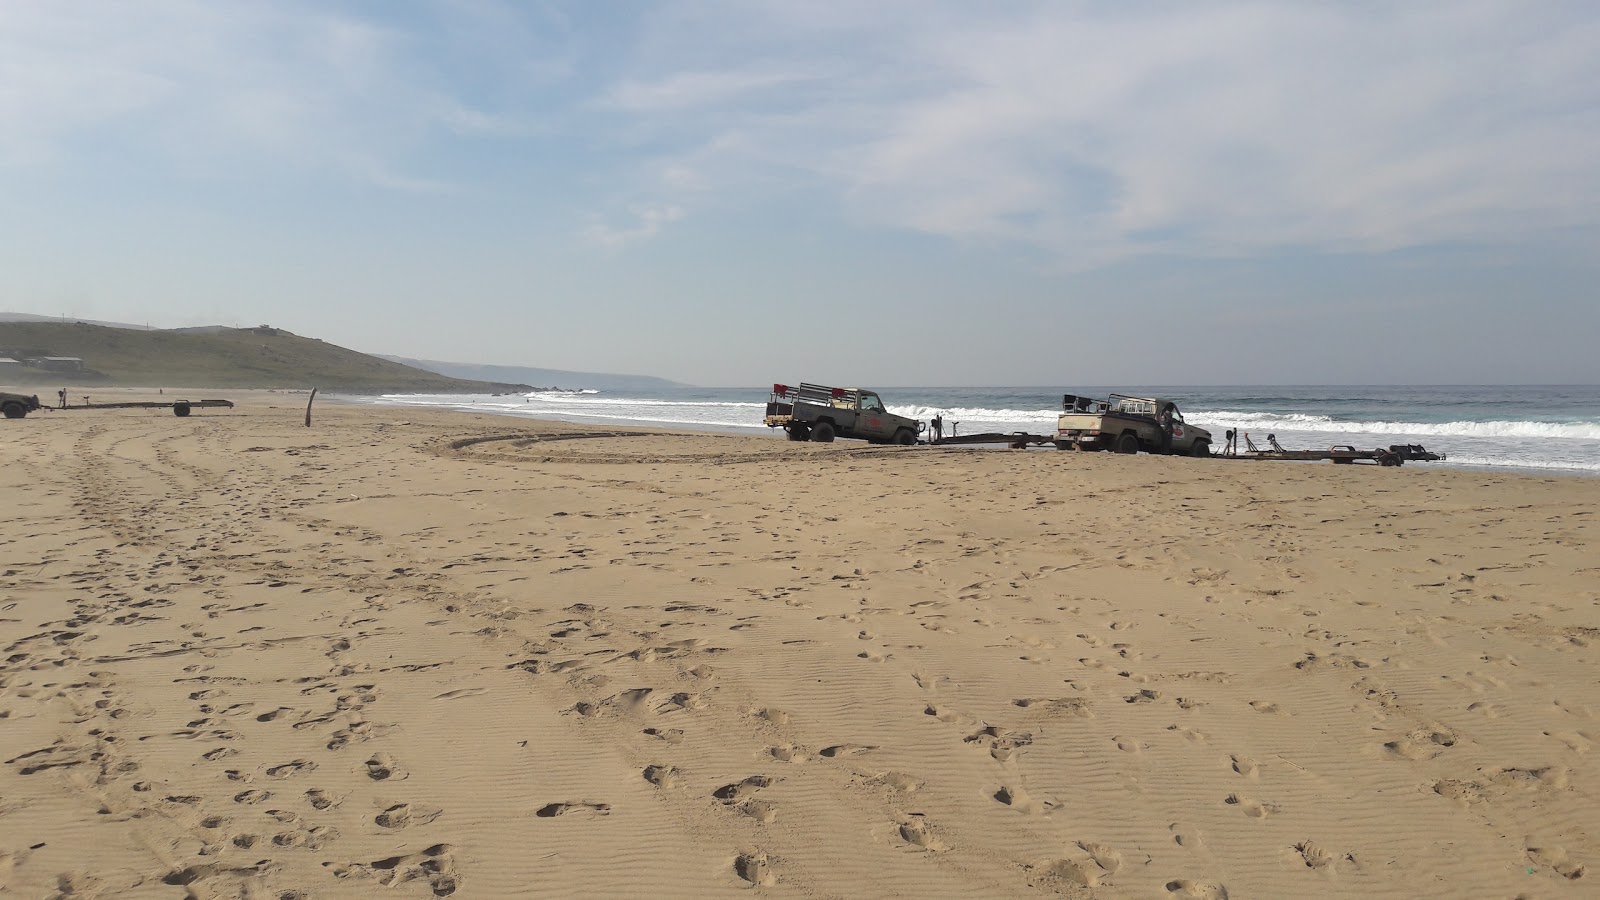 Mbotyi beach'in fotoğrafı geniş plaj ile birlikte